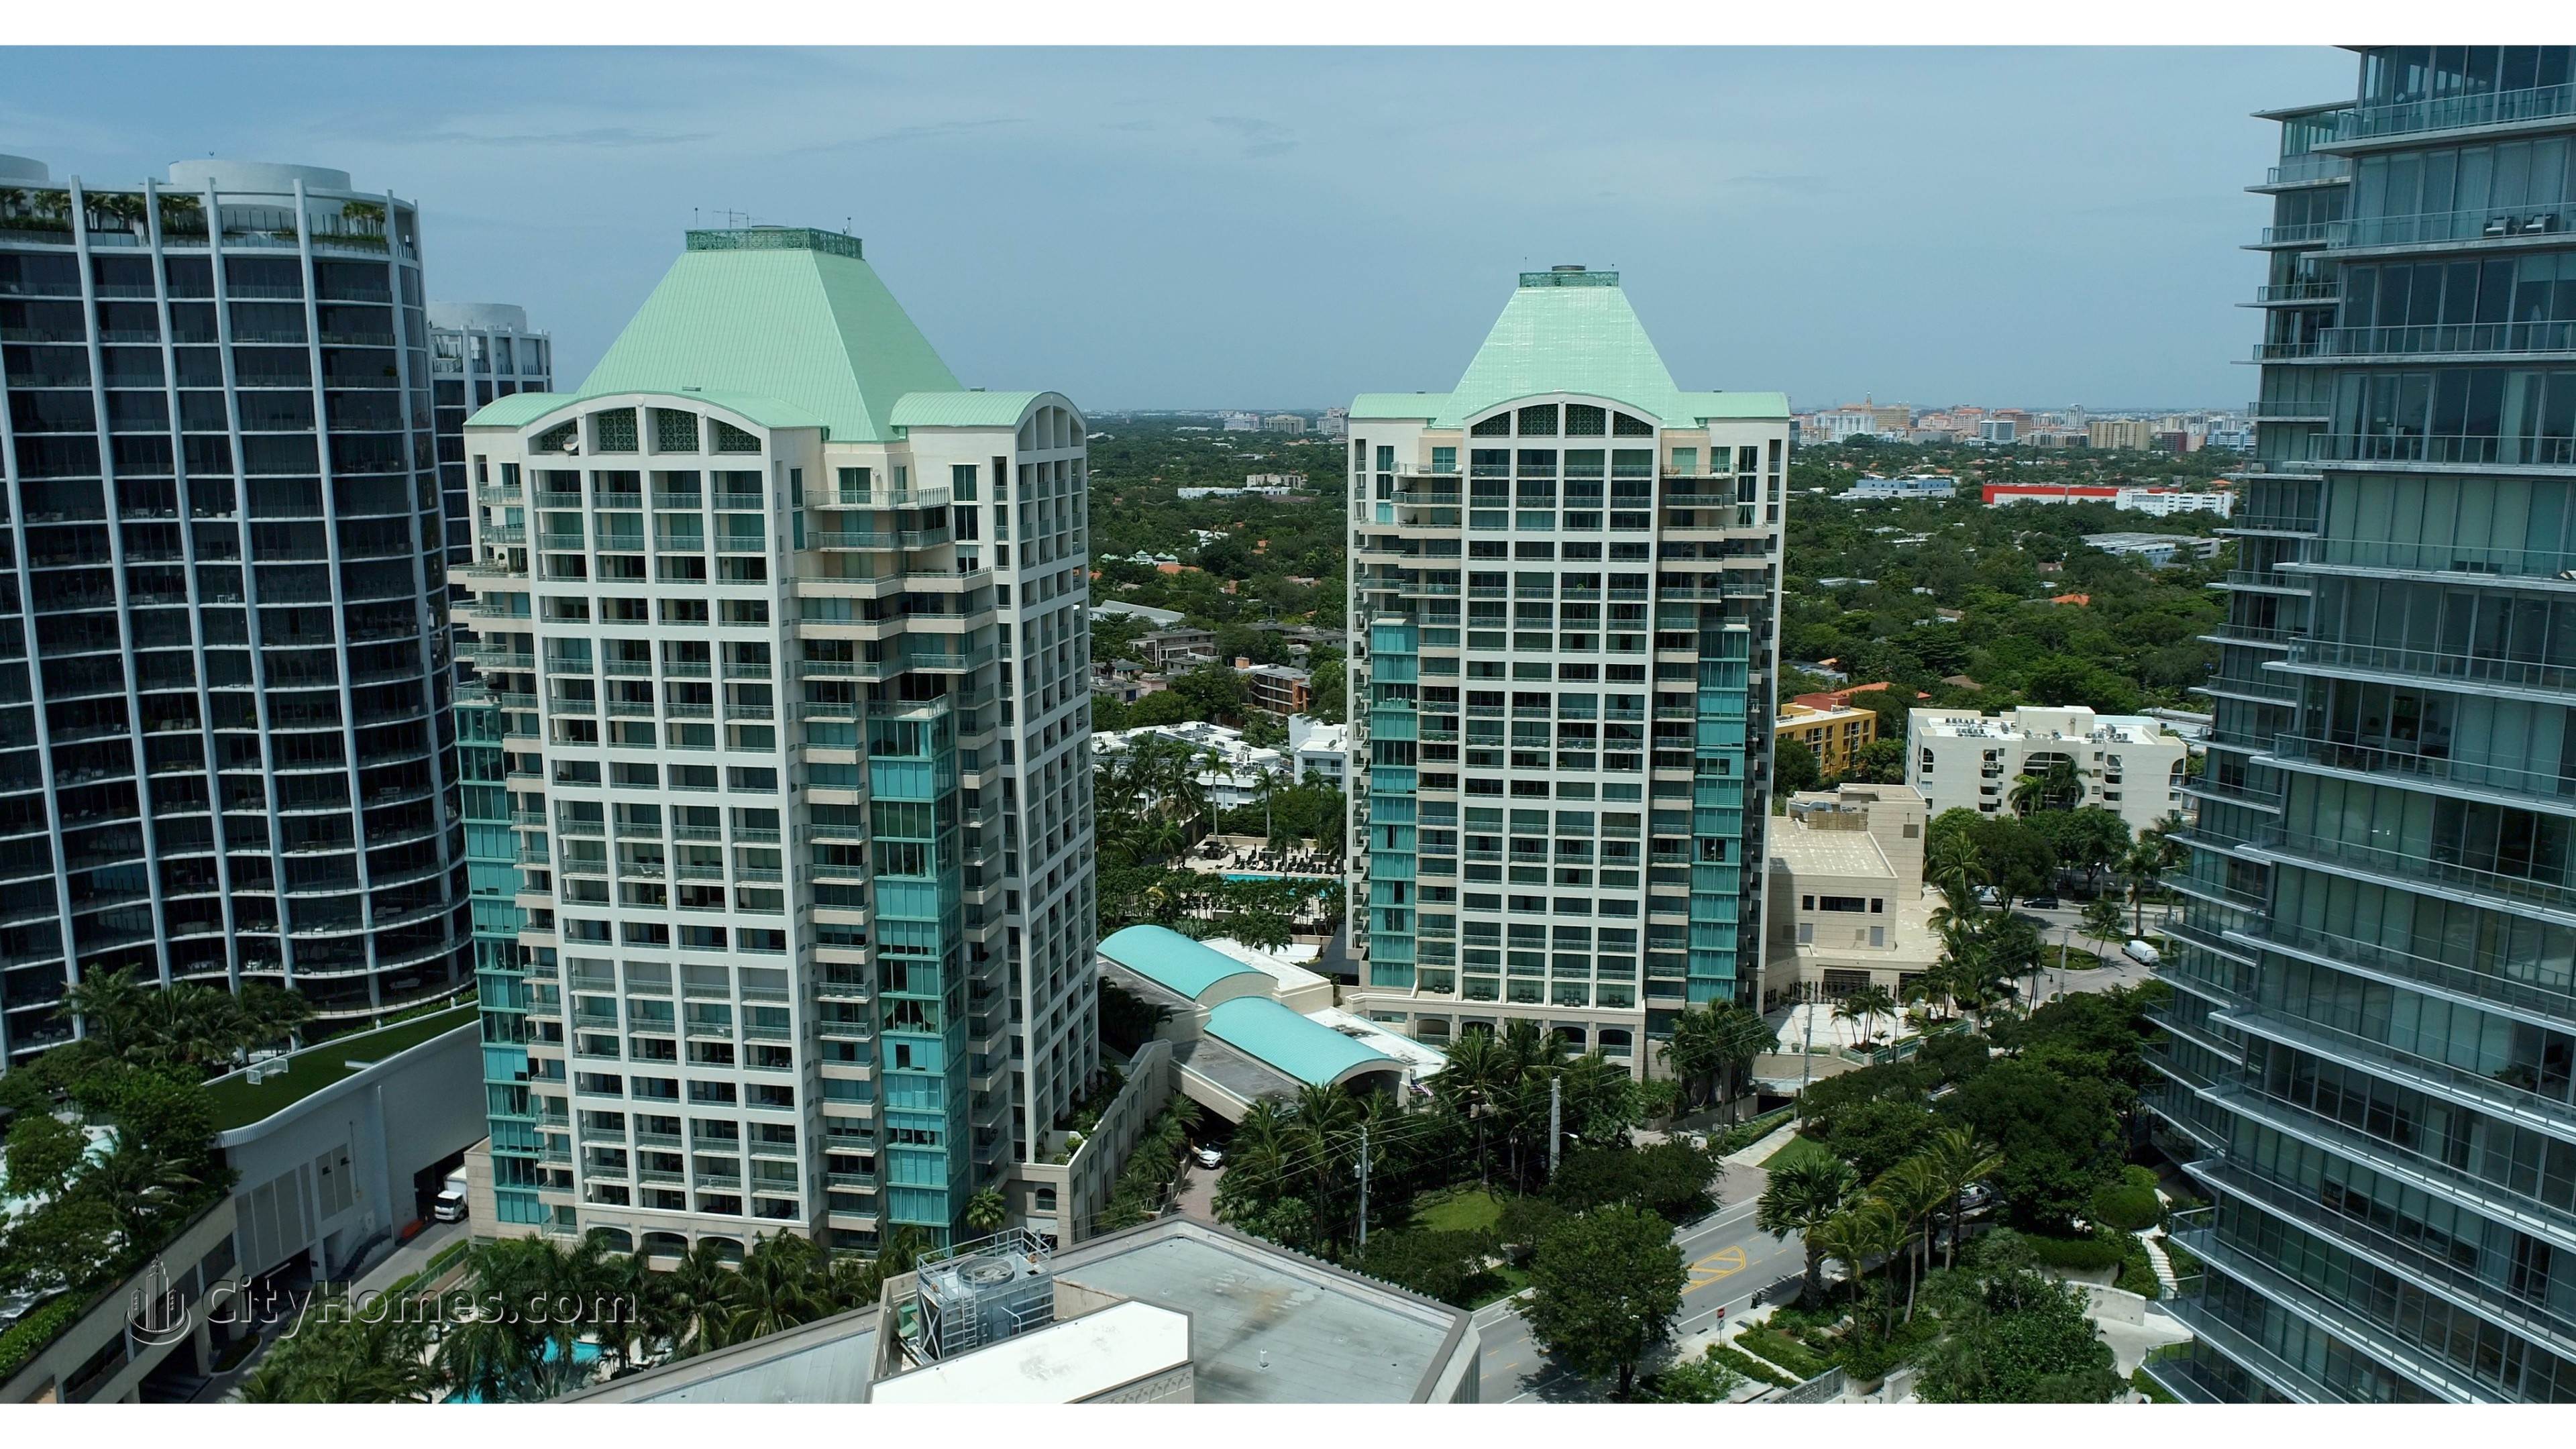 Ritz-Carlton Coconut Grove xây dựng tại 3300 And 3350 SW 27th Avenue, Miami, FL 33133